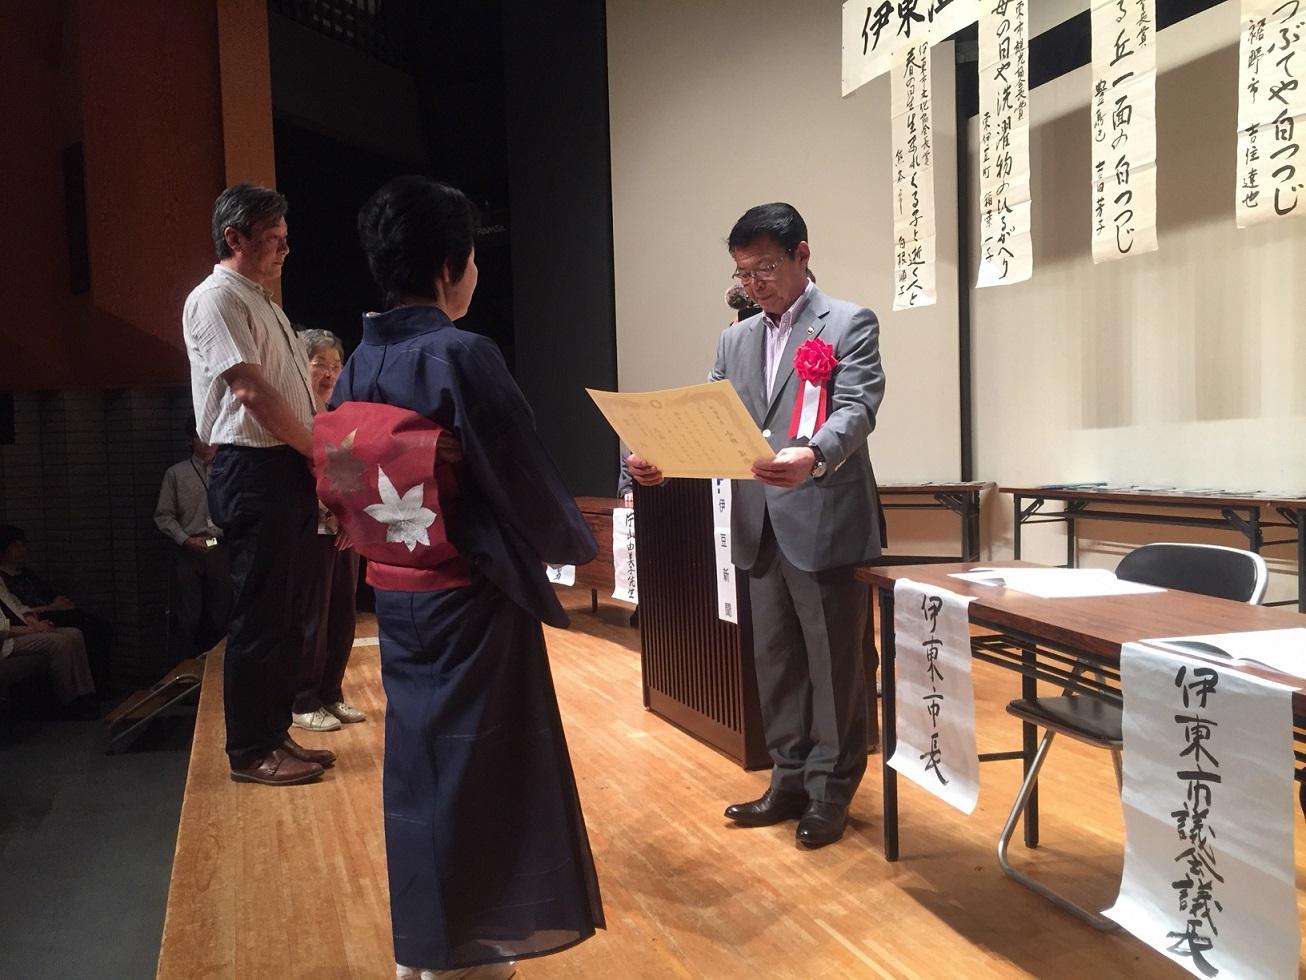 「伊東温泉つつじ祭り 俳句大会」の表彰式で賞状を贈呈する伊東市長の写真